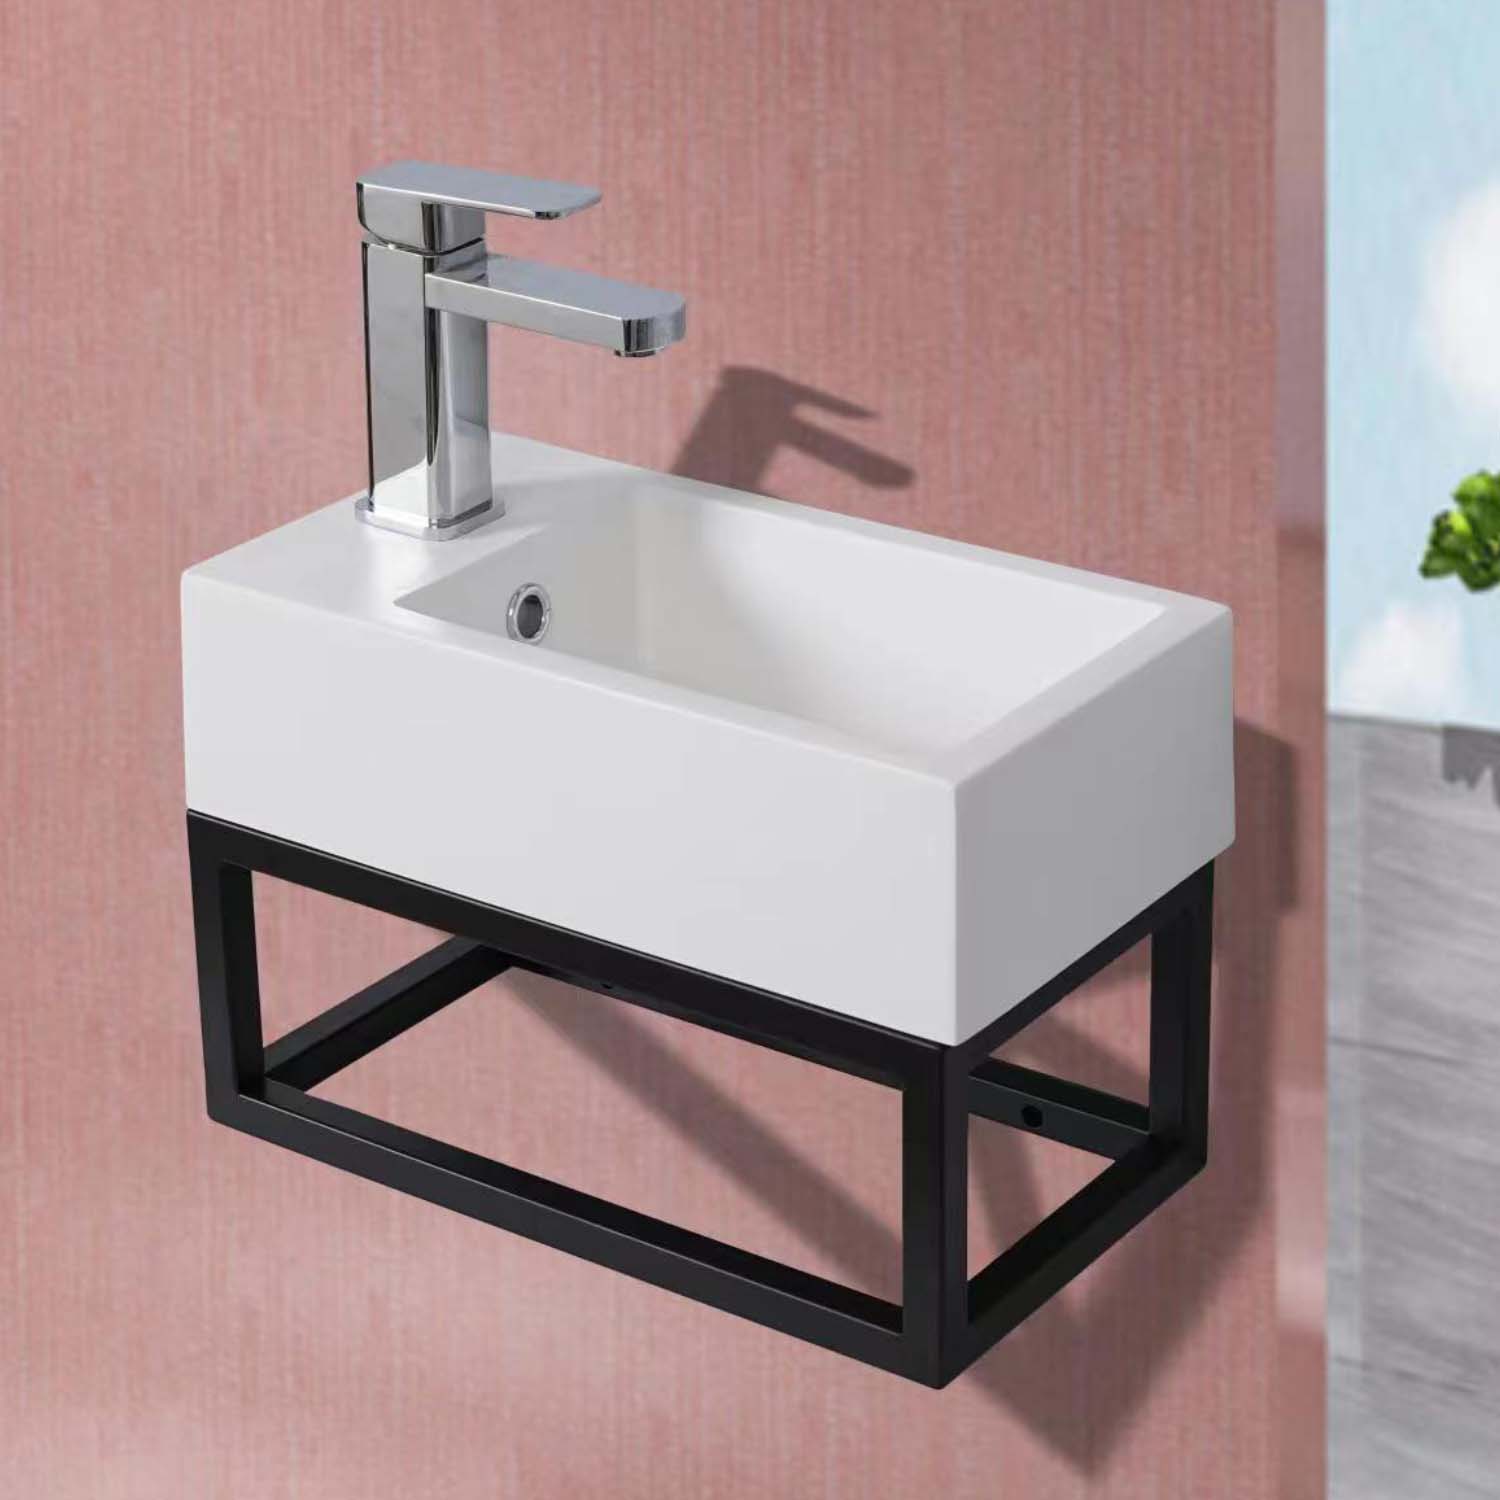 STILFORM Gäste WC Waschbecken Soho Industrial Design aus Mineralguss mit Metallgestell Schwarz Matt mit Hahnloch